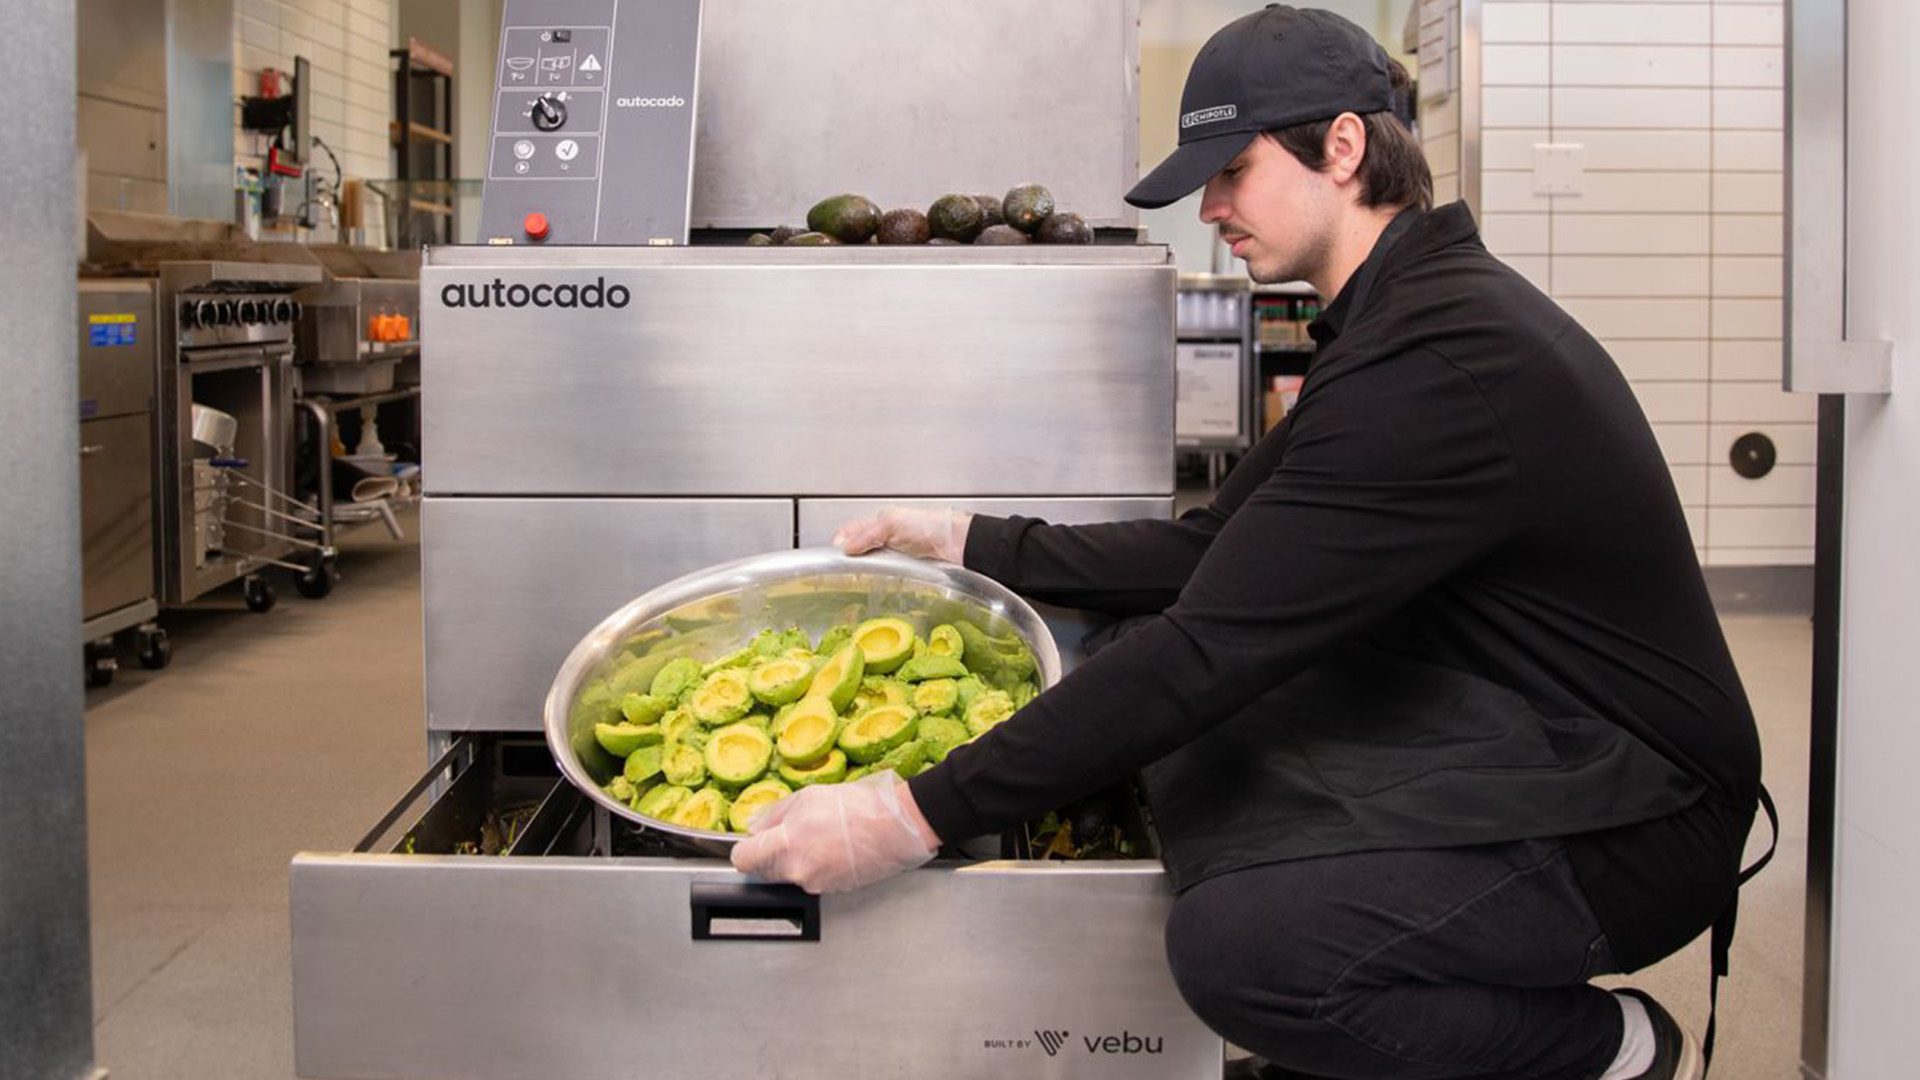 Chipotle's Autocado, a robot that prepares avocados for guacamole